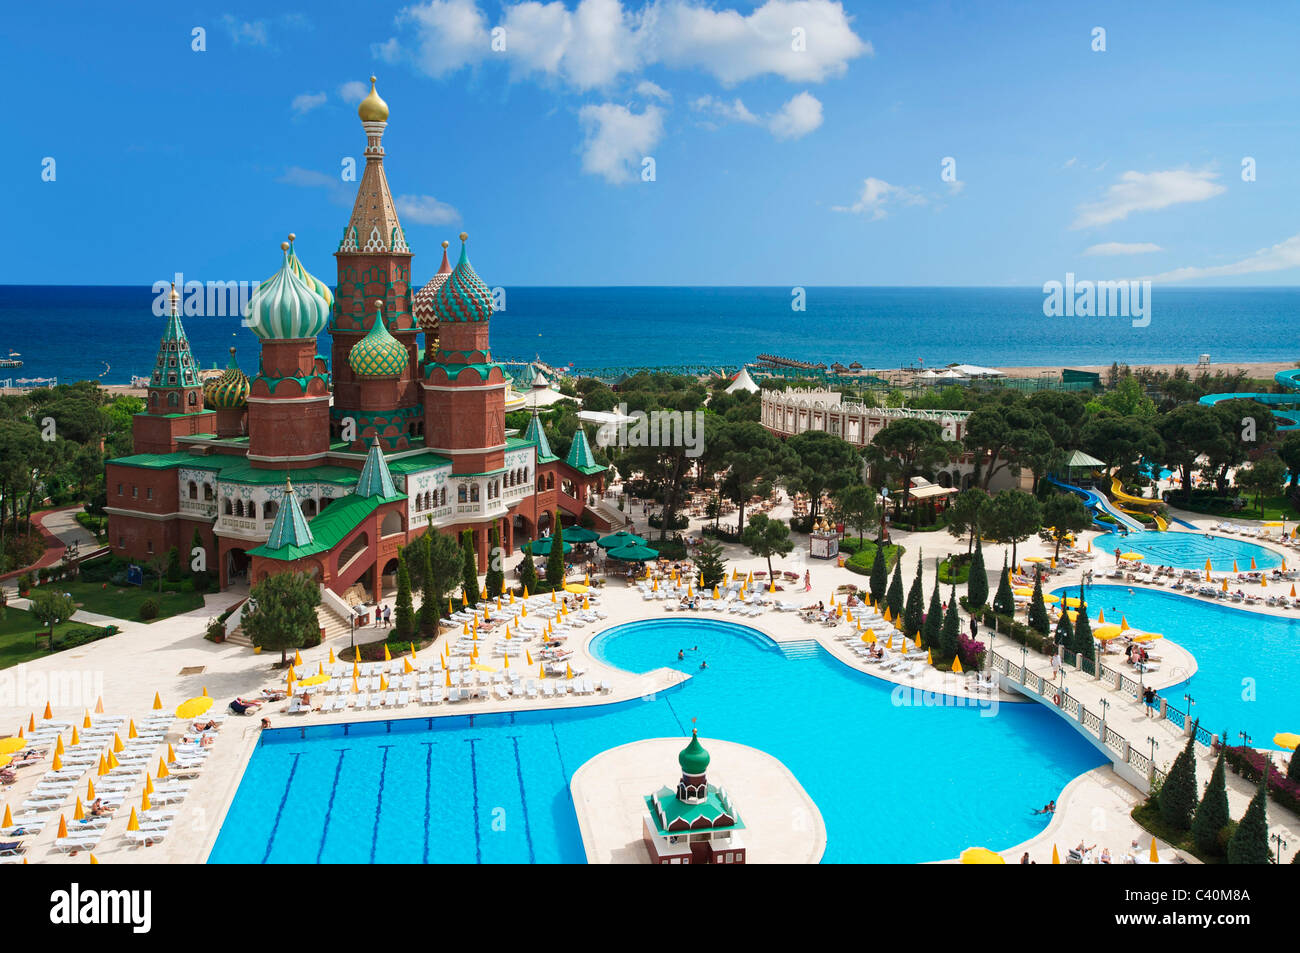 Türkische Riviera Hotel WOW, Kremlin Palace, Antalya, türkische Riviera, Türkei, pool Stockfoto